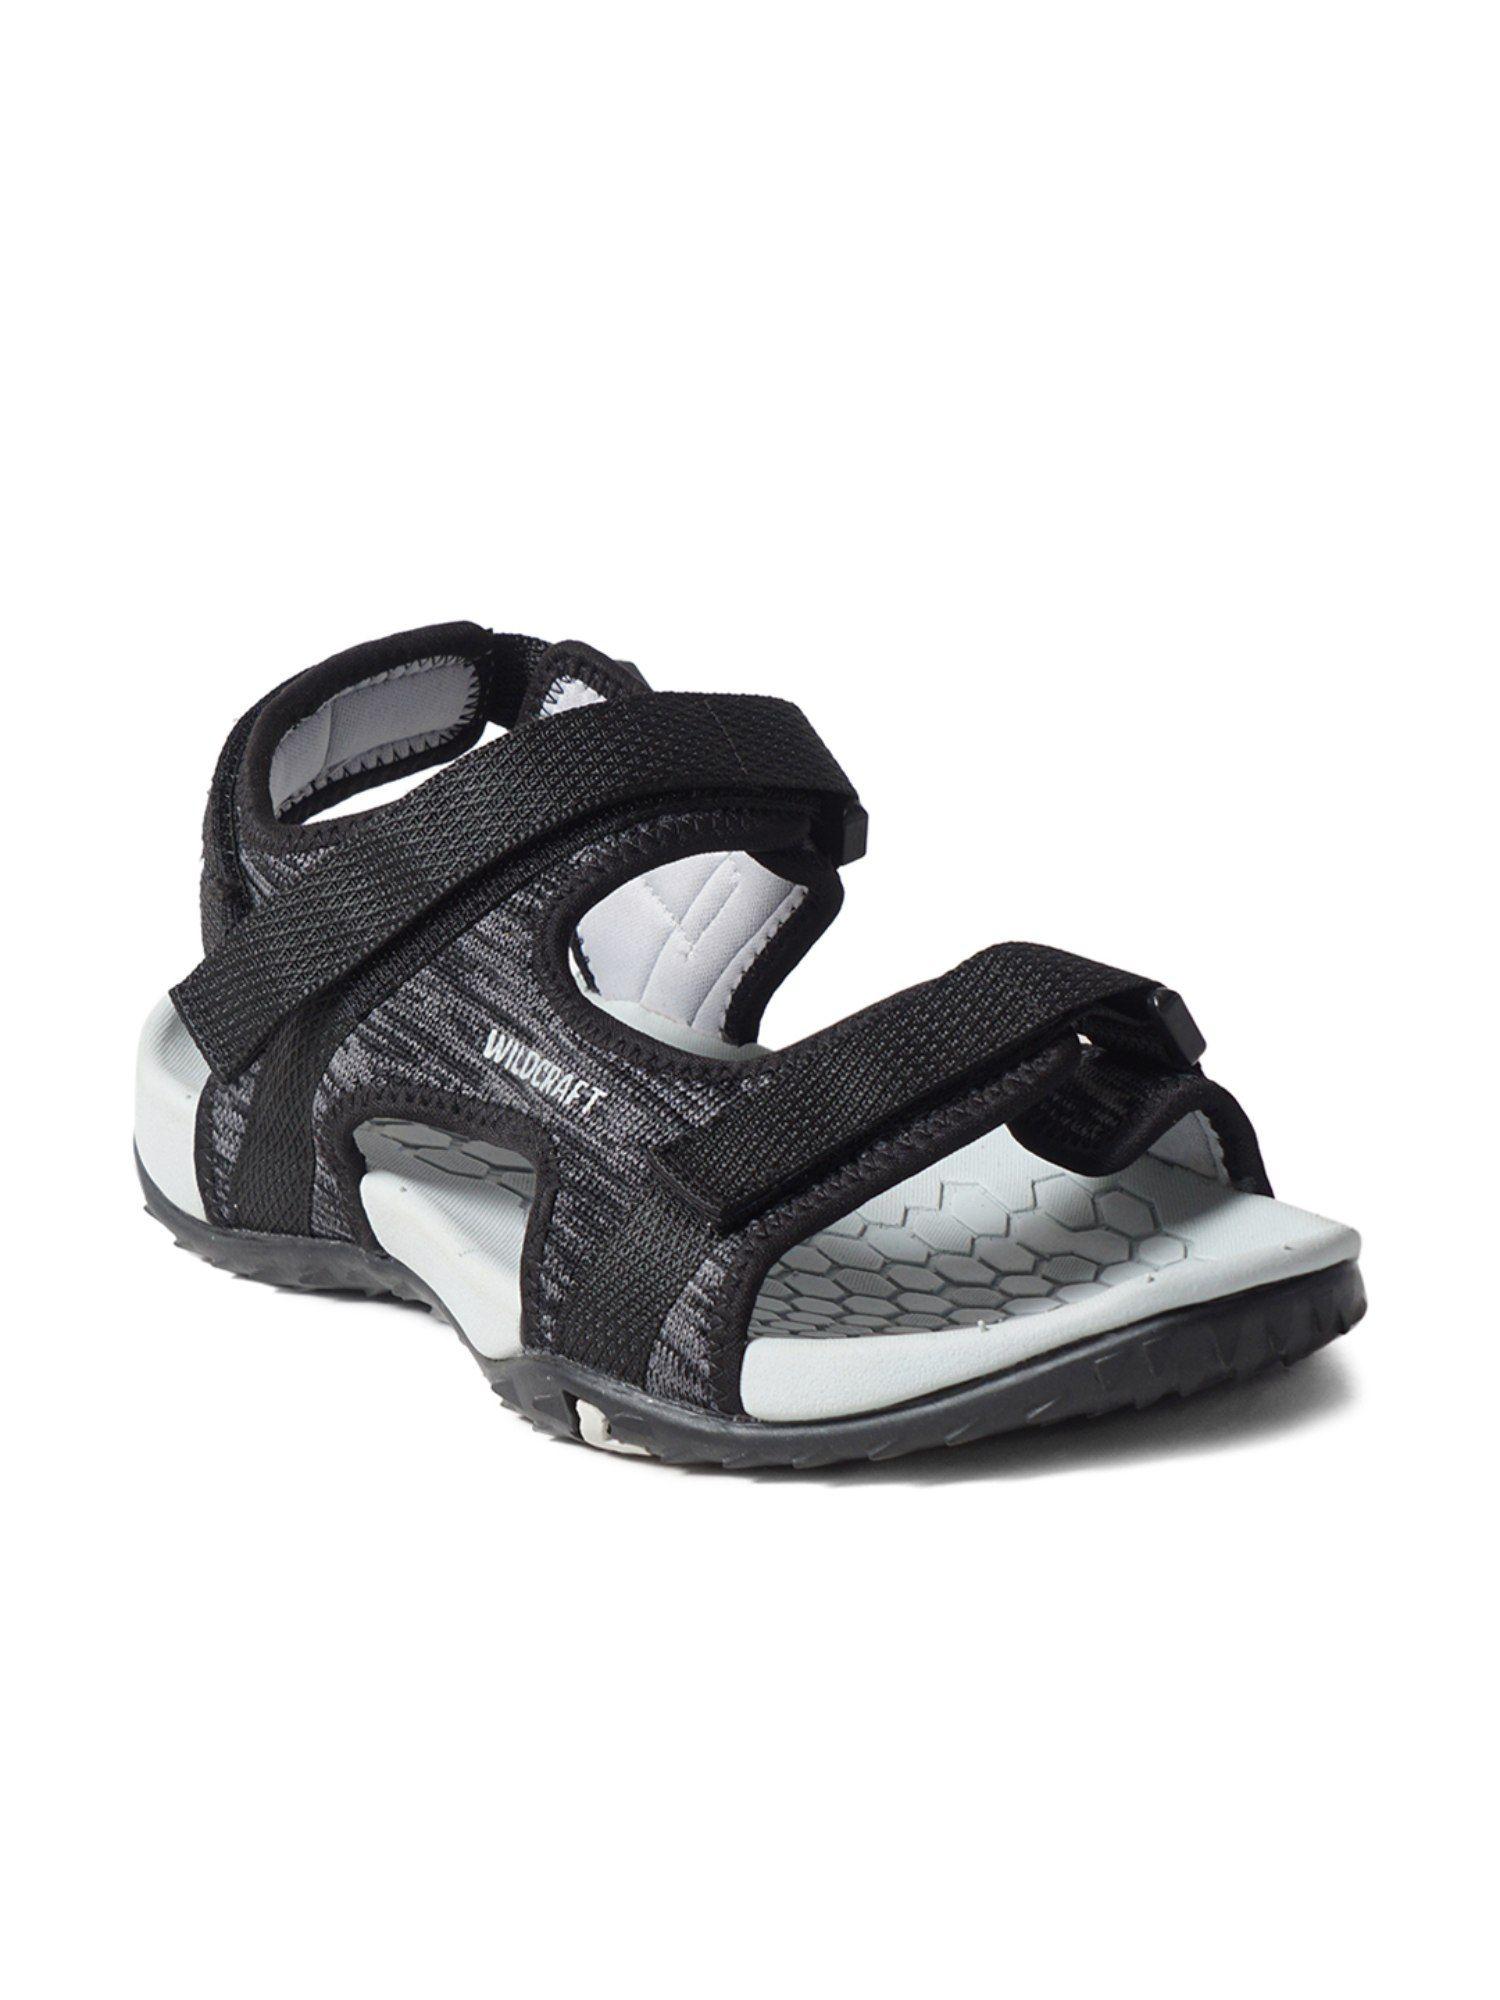 Men Vesta Black Floater Sandals